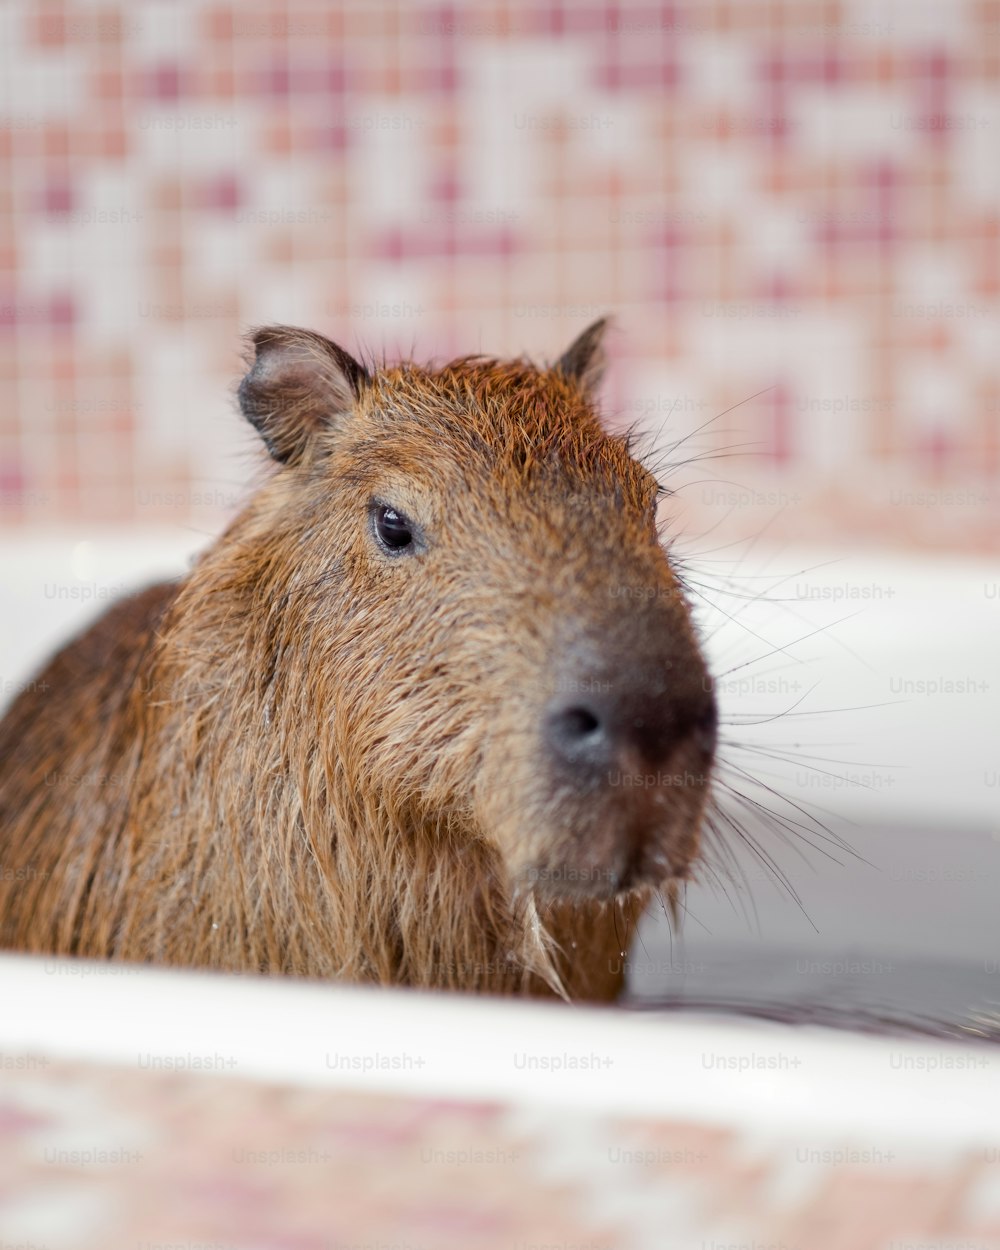 Un primer plano de un capibara en una bañera